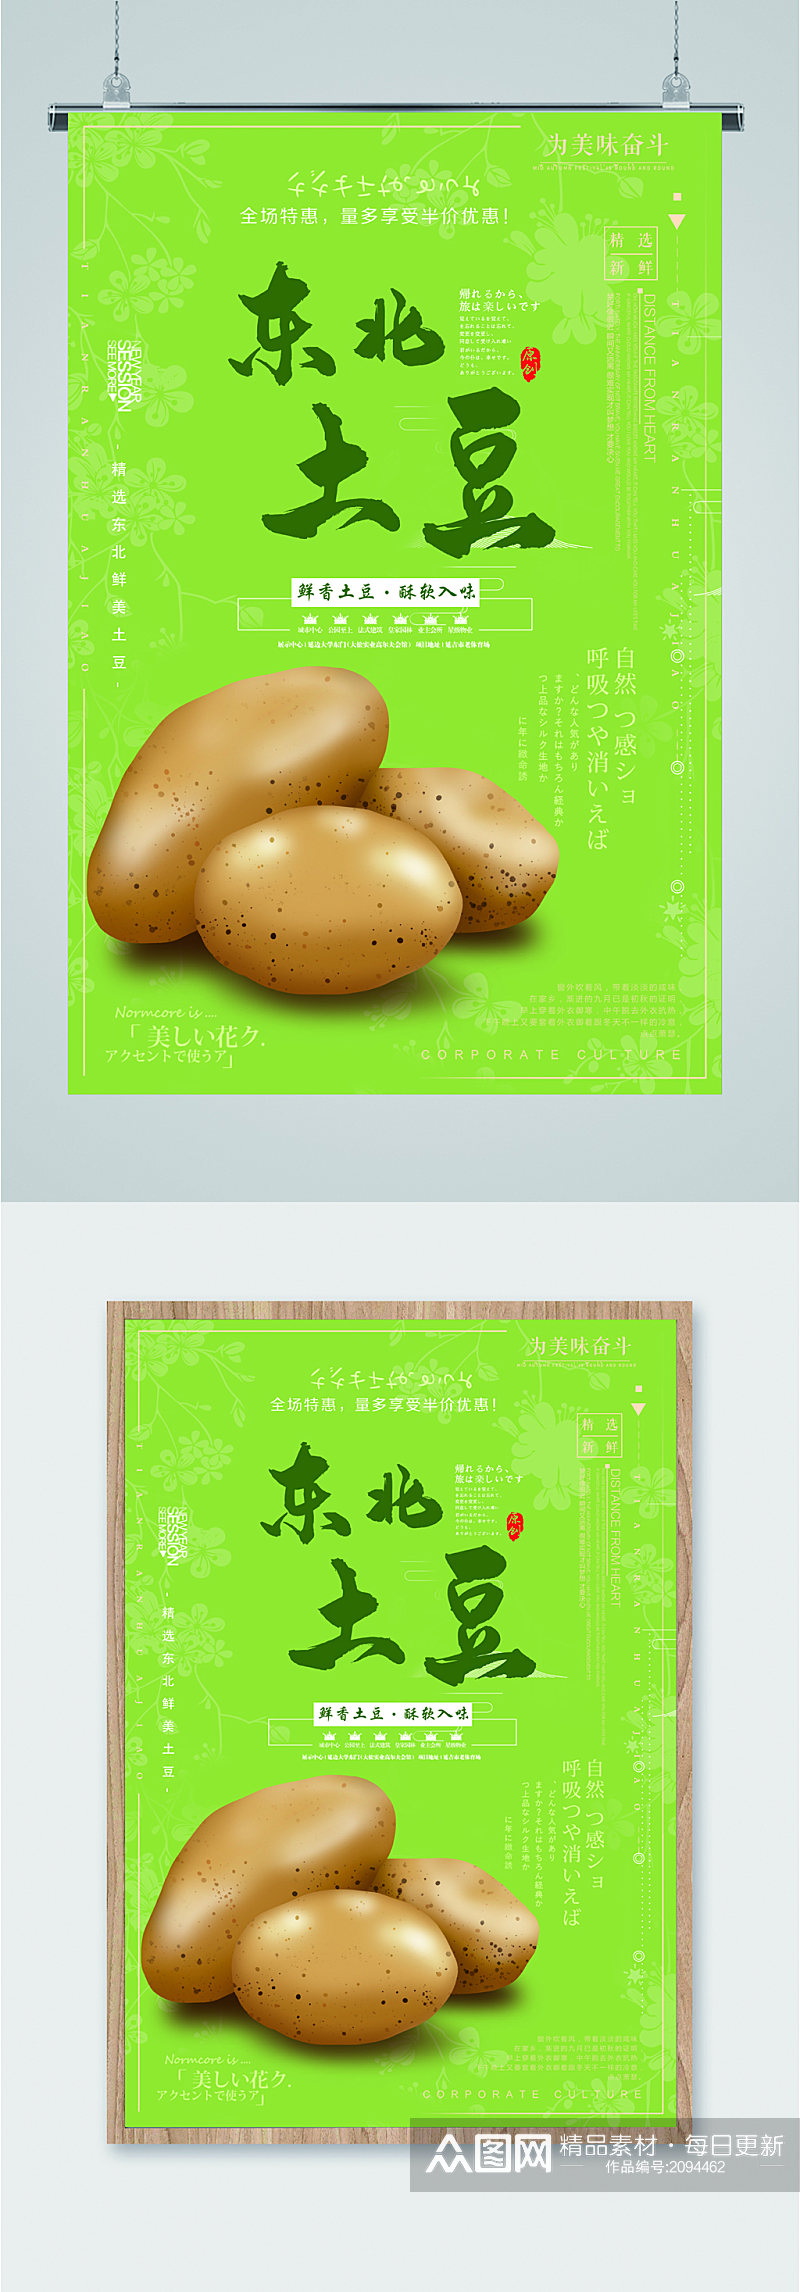 东北新鲜土豆海报素材